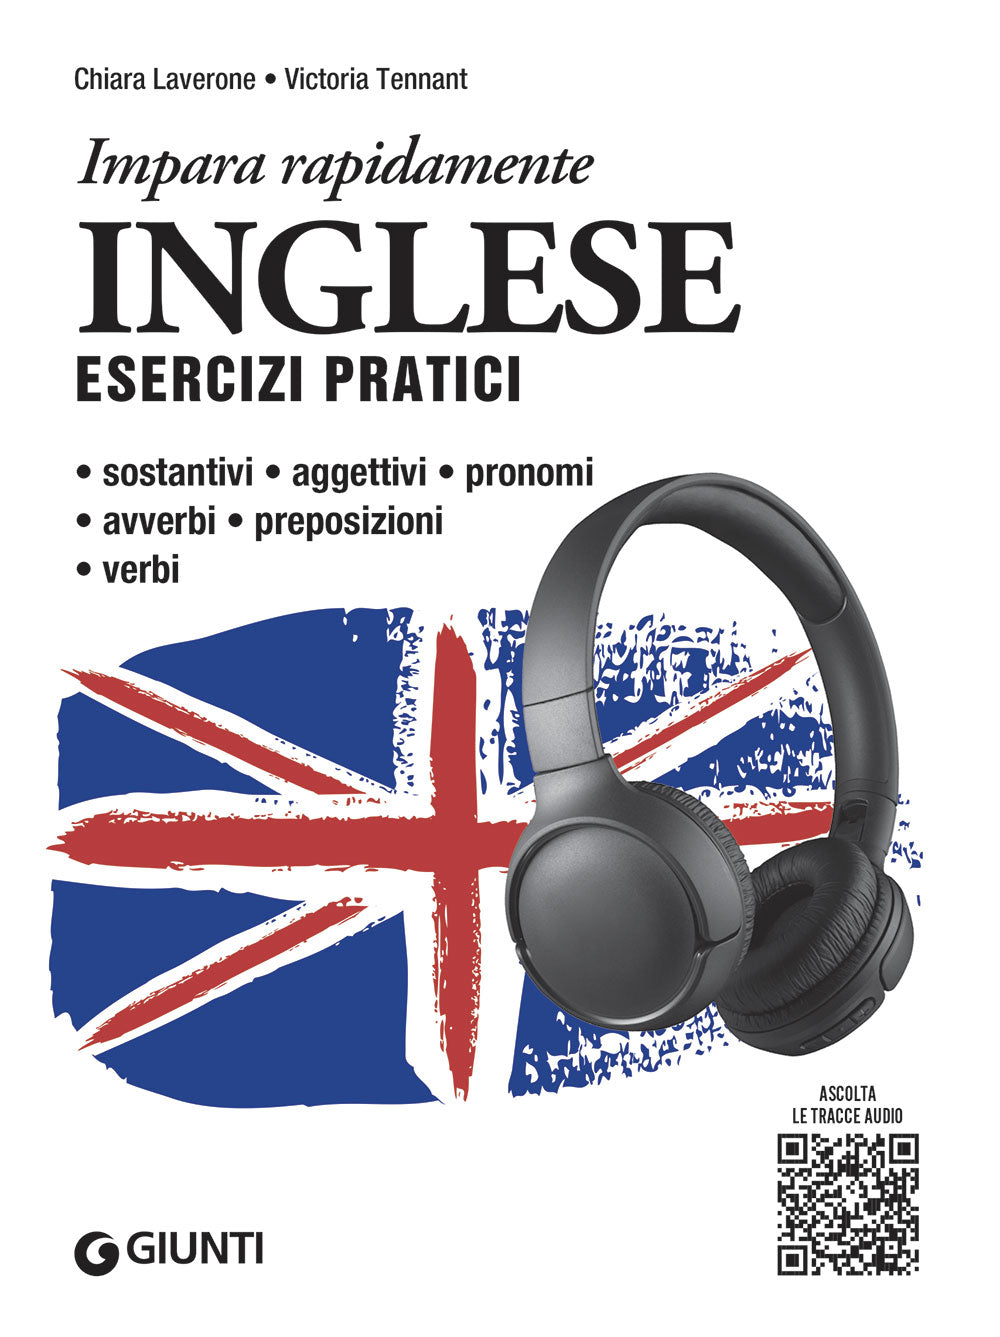 Inglese. Esercizi pratici con tracce audio. Sostantivi, aggettivi, pronomi, avverbi, preposizioni, verbi